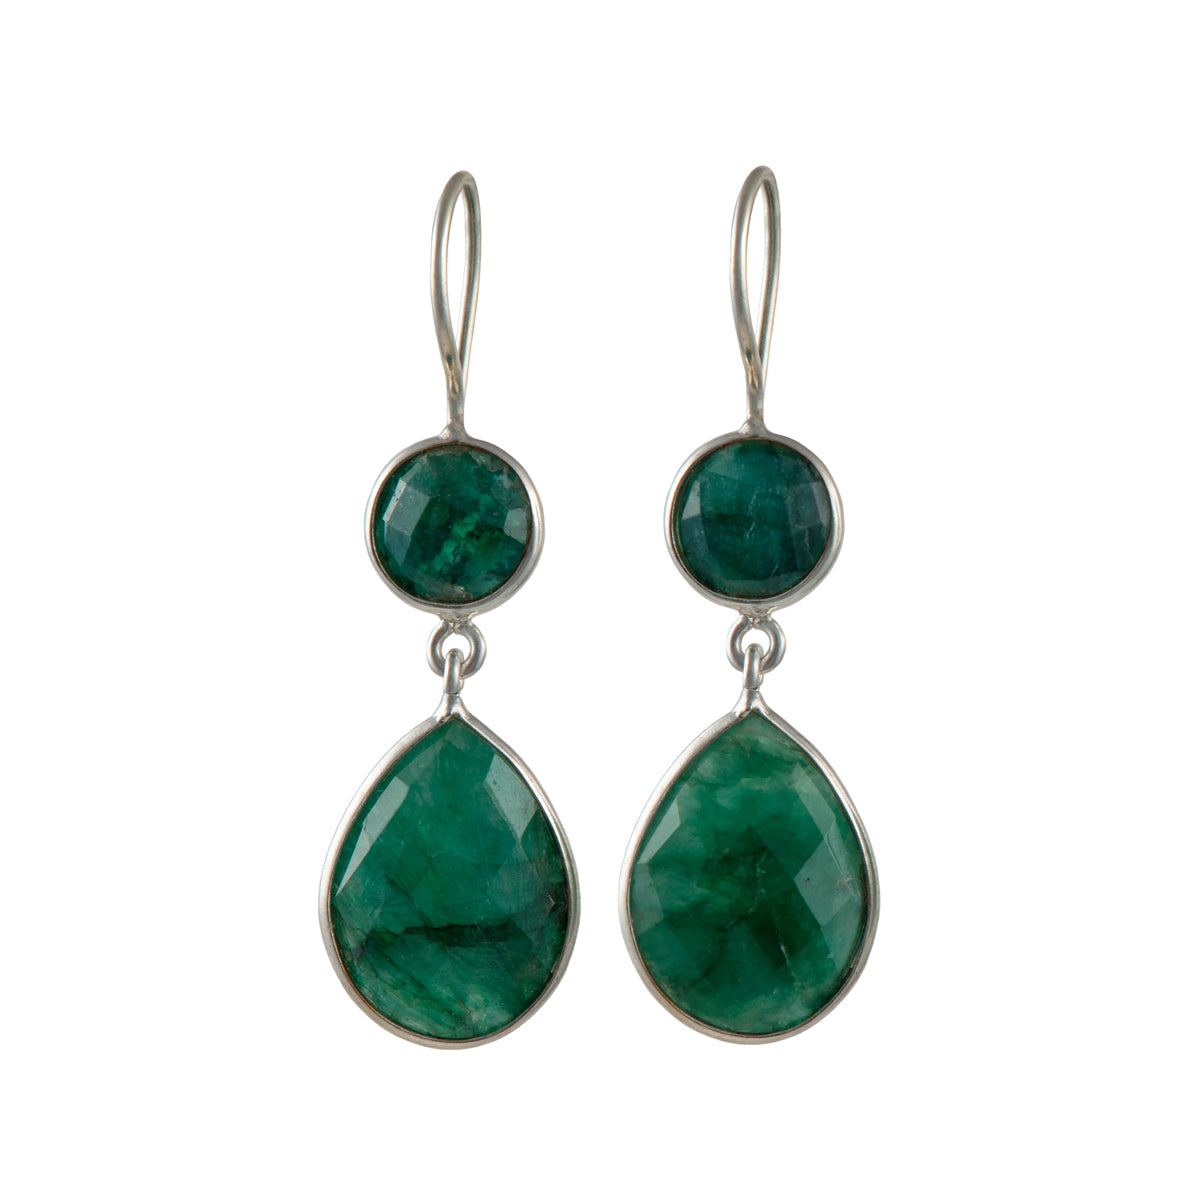 Green Silimanite Gemstone Two Stone Earrings in Sterling Silver - Teardrop